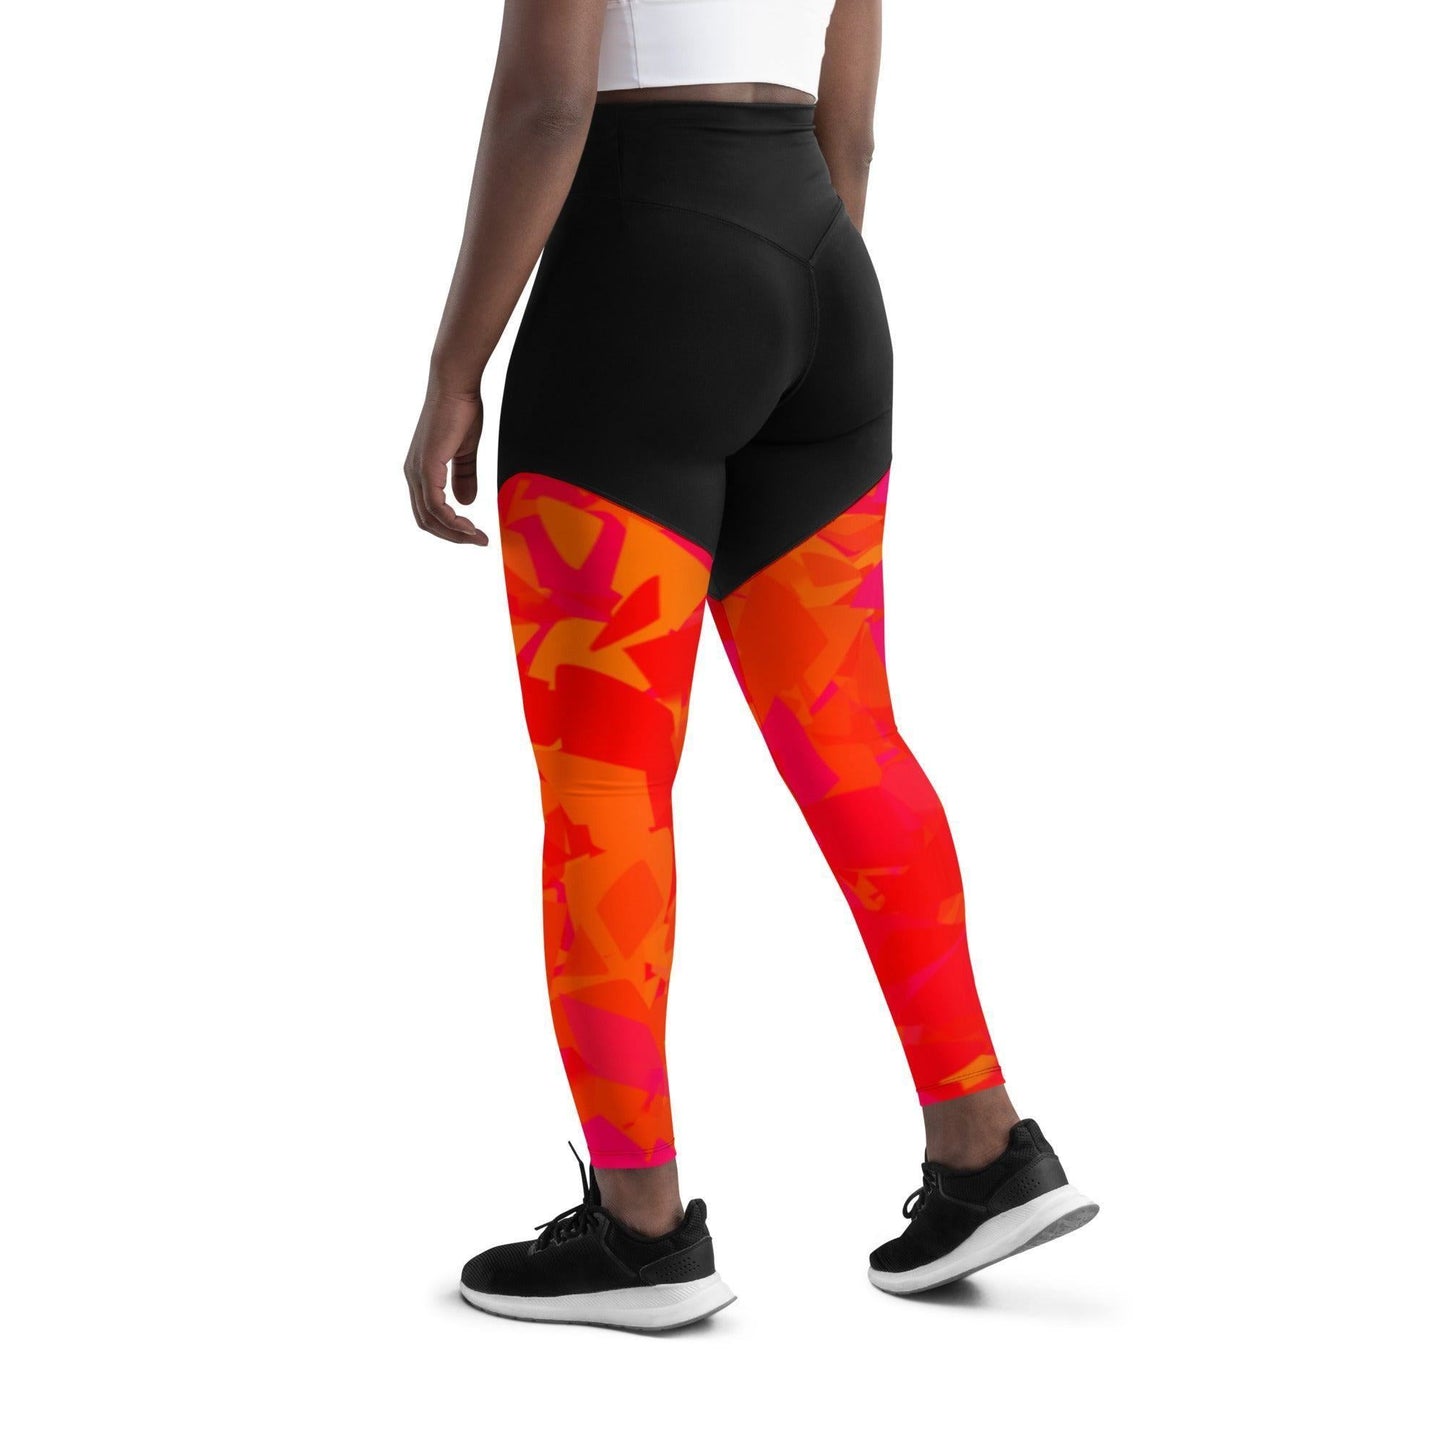 Red Crystal Damen Sport Leggings -- Red Crystal Damen Sport Leggings - undefined Sport Leggings | JLR Design